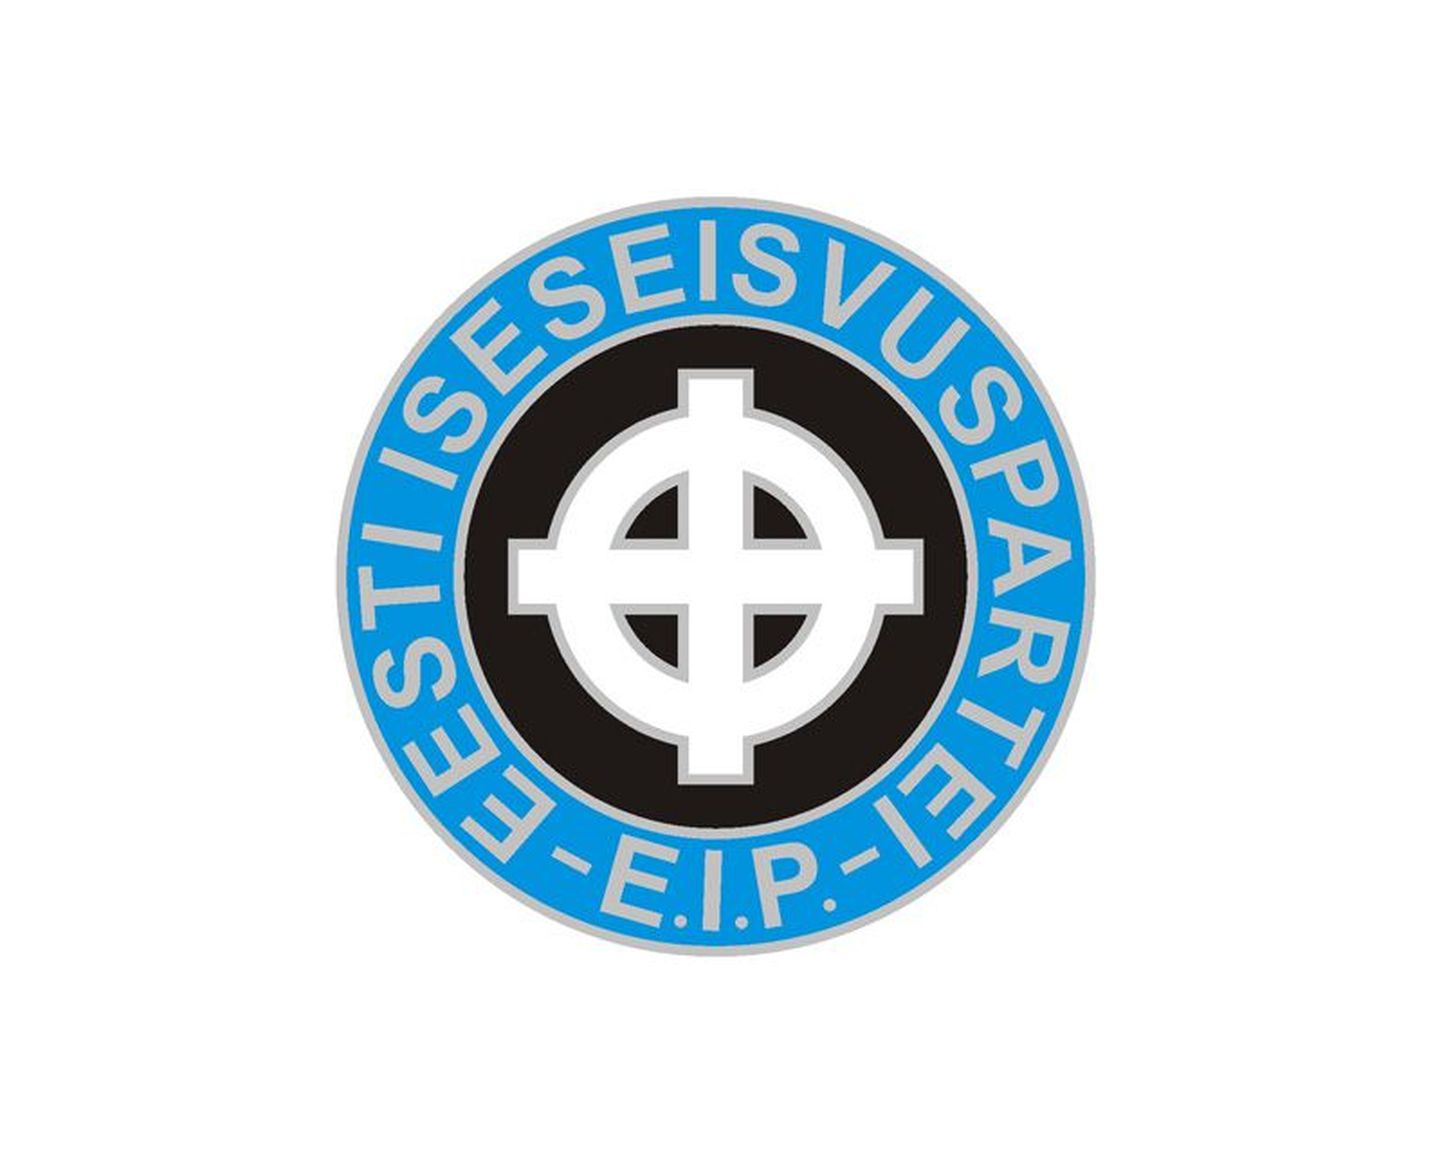 Eesti Iseseisvuspartei